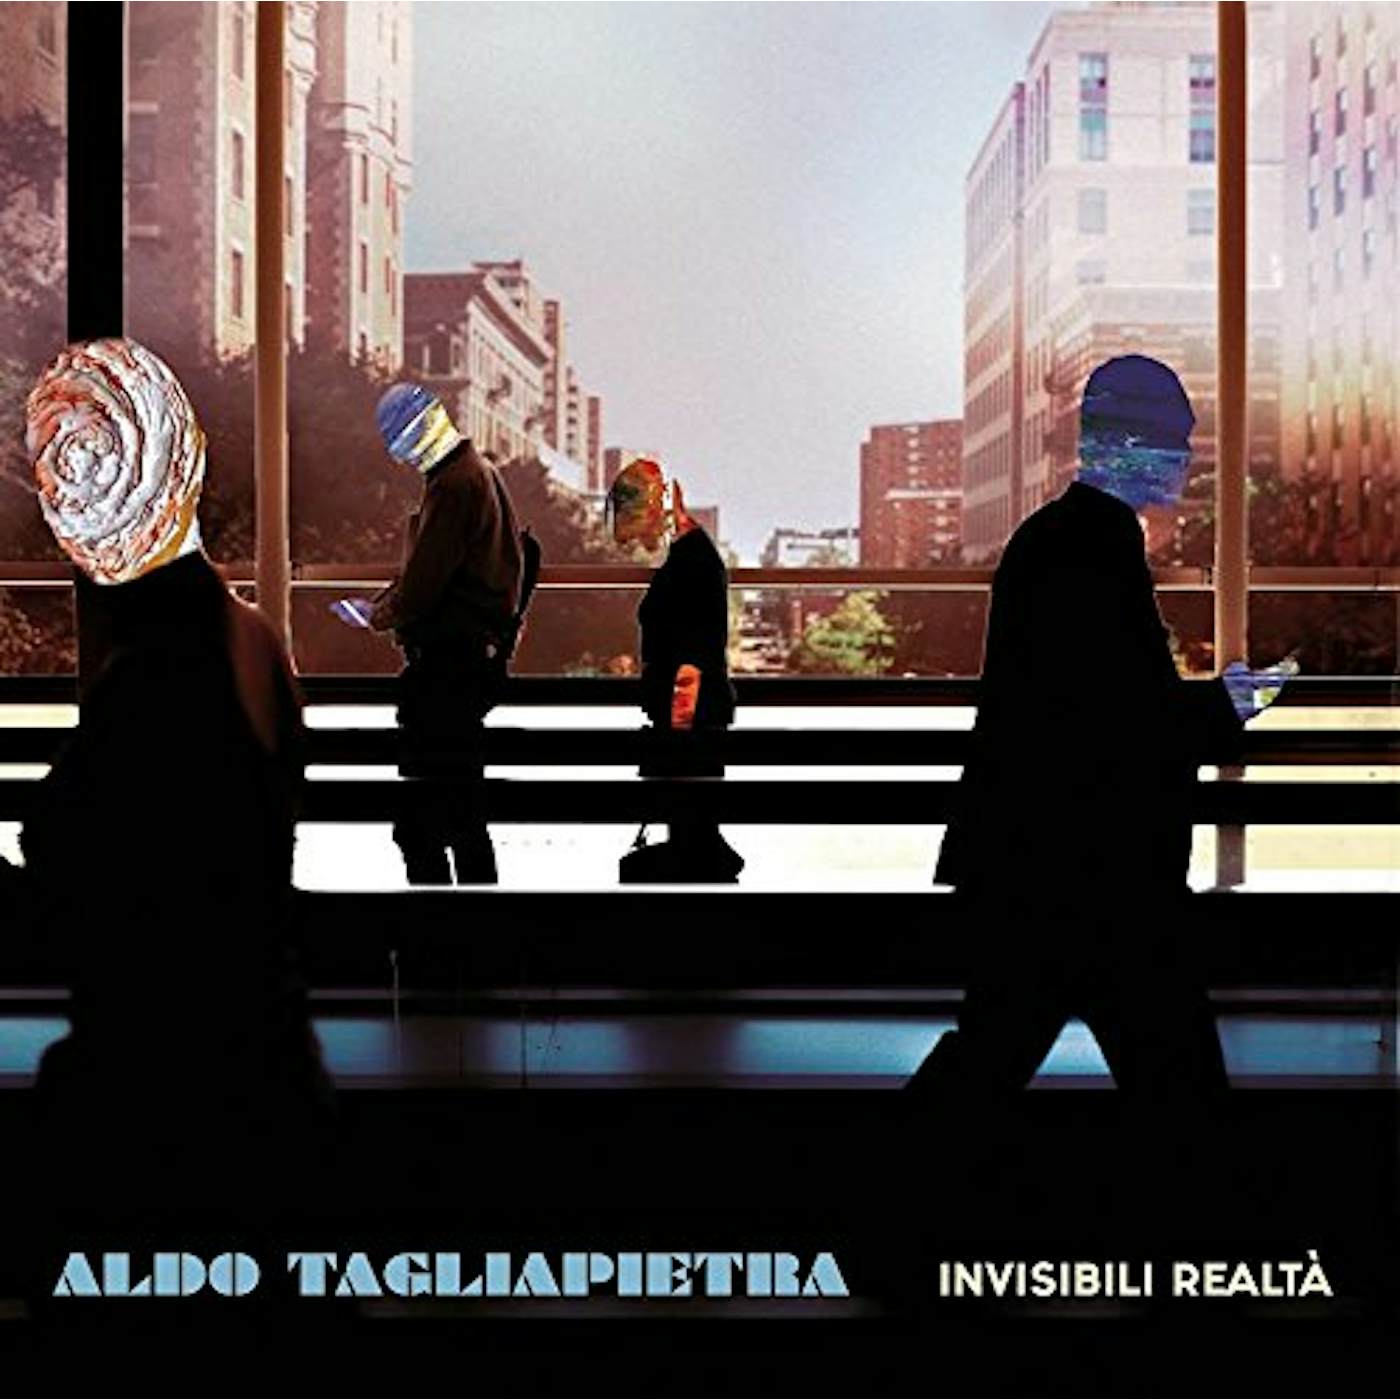 Aldo Tagliapietra INVISIBILI REALTA Vinyl Record